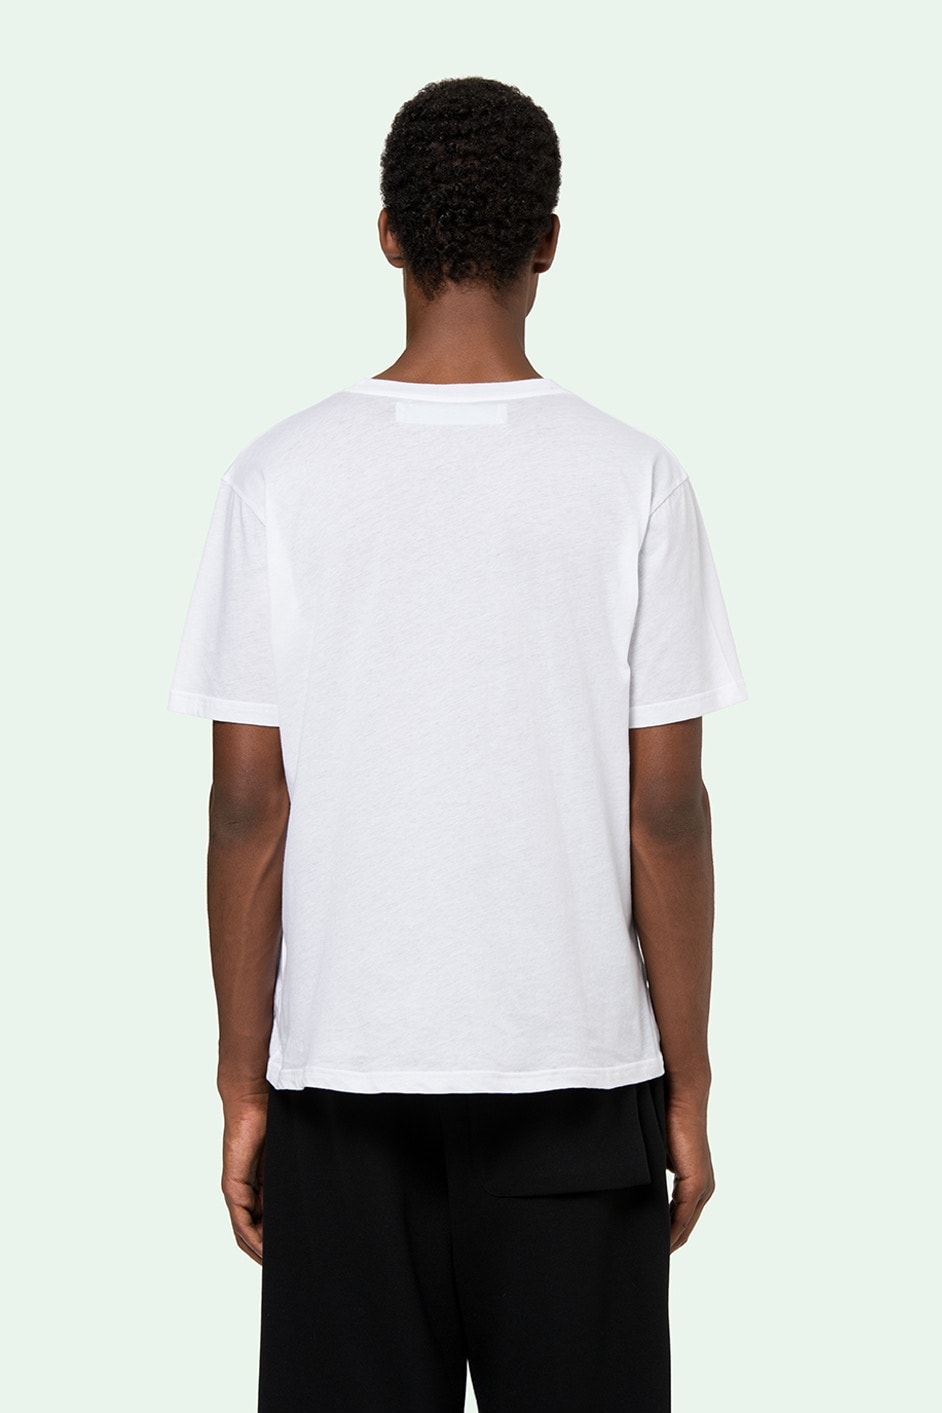 Off-White™ 推出售價約 $500 美元的打底 T-Shirt 套裝